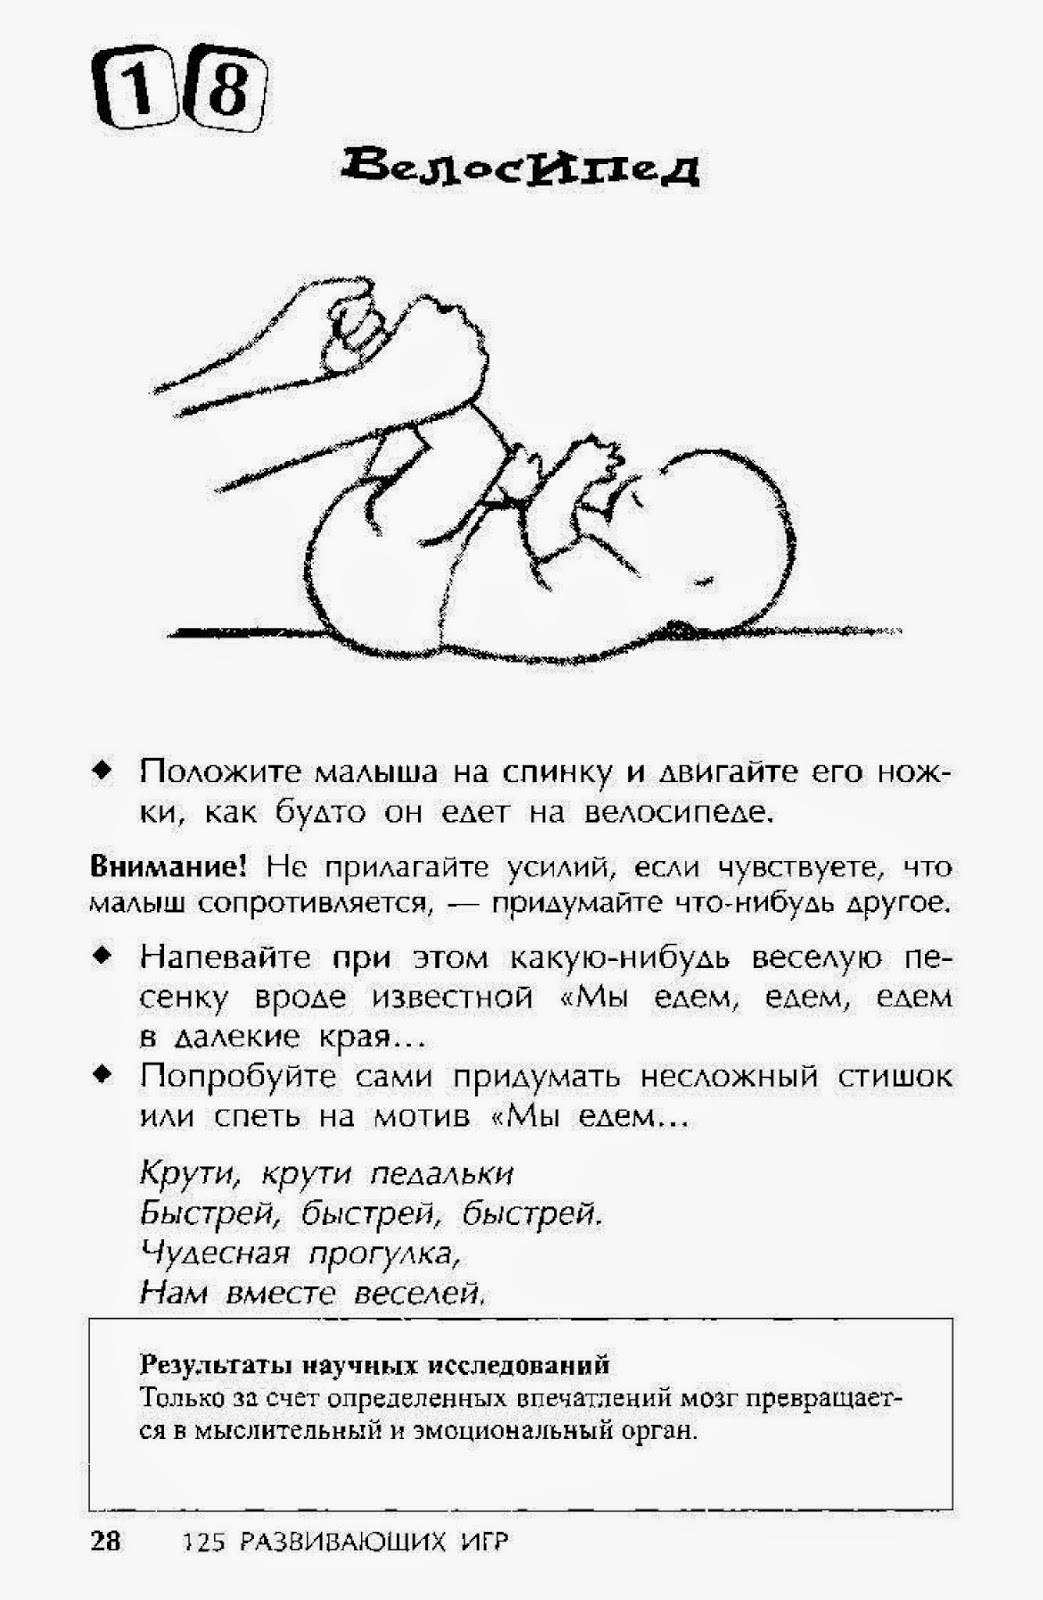 Как укладывать ребенка спать в 2 года. Как можно ребенка уложить спать. Укладываем ребёнка спать новорожденного. Уложить ребенка спать в 3 месяца. Как ложить ребенка в 3 месяца.